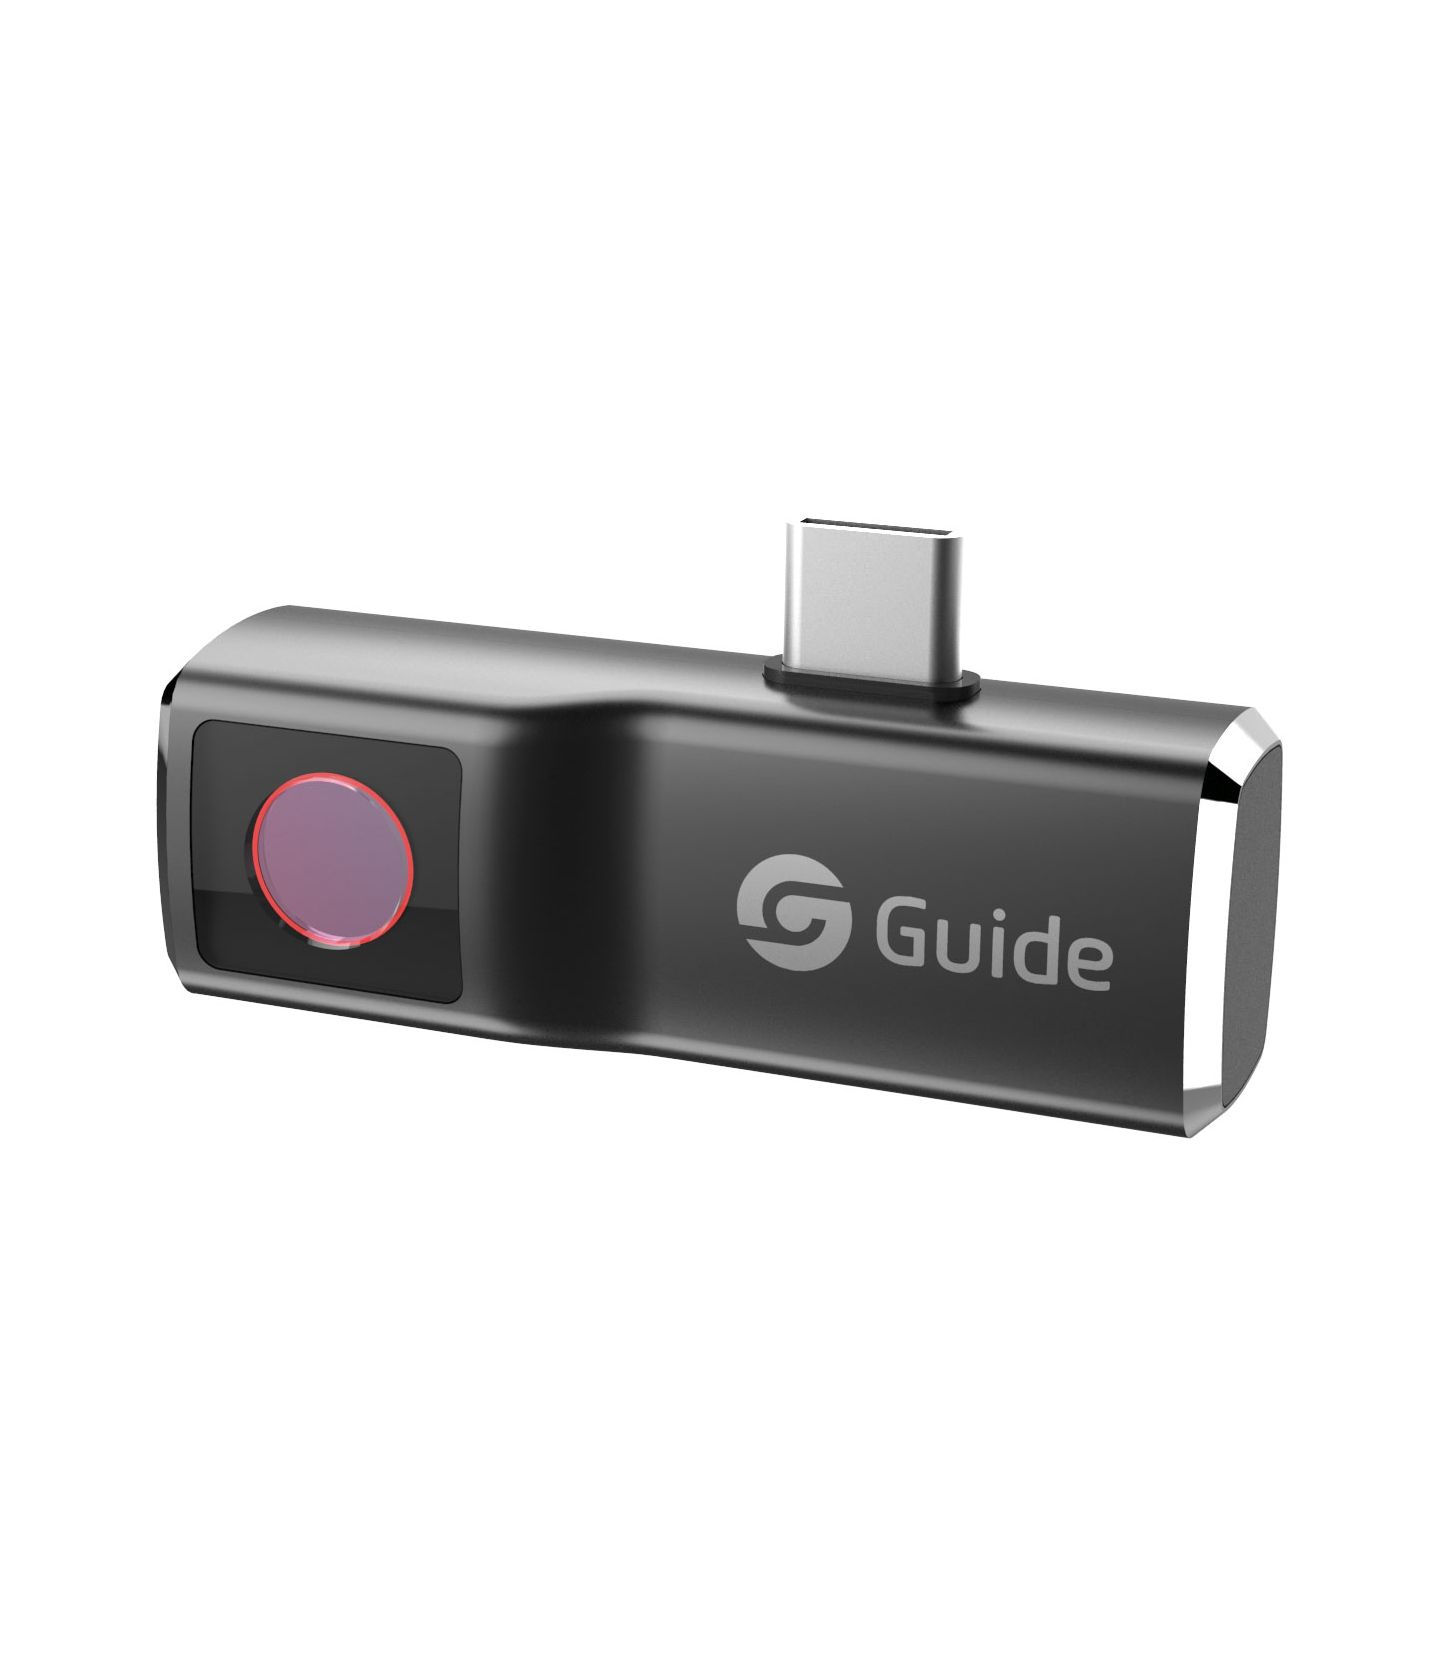 Caméra thermique infrarouge haute résolution USB type C pour téléphones et  r